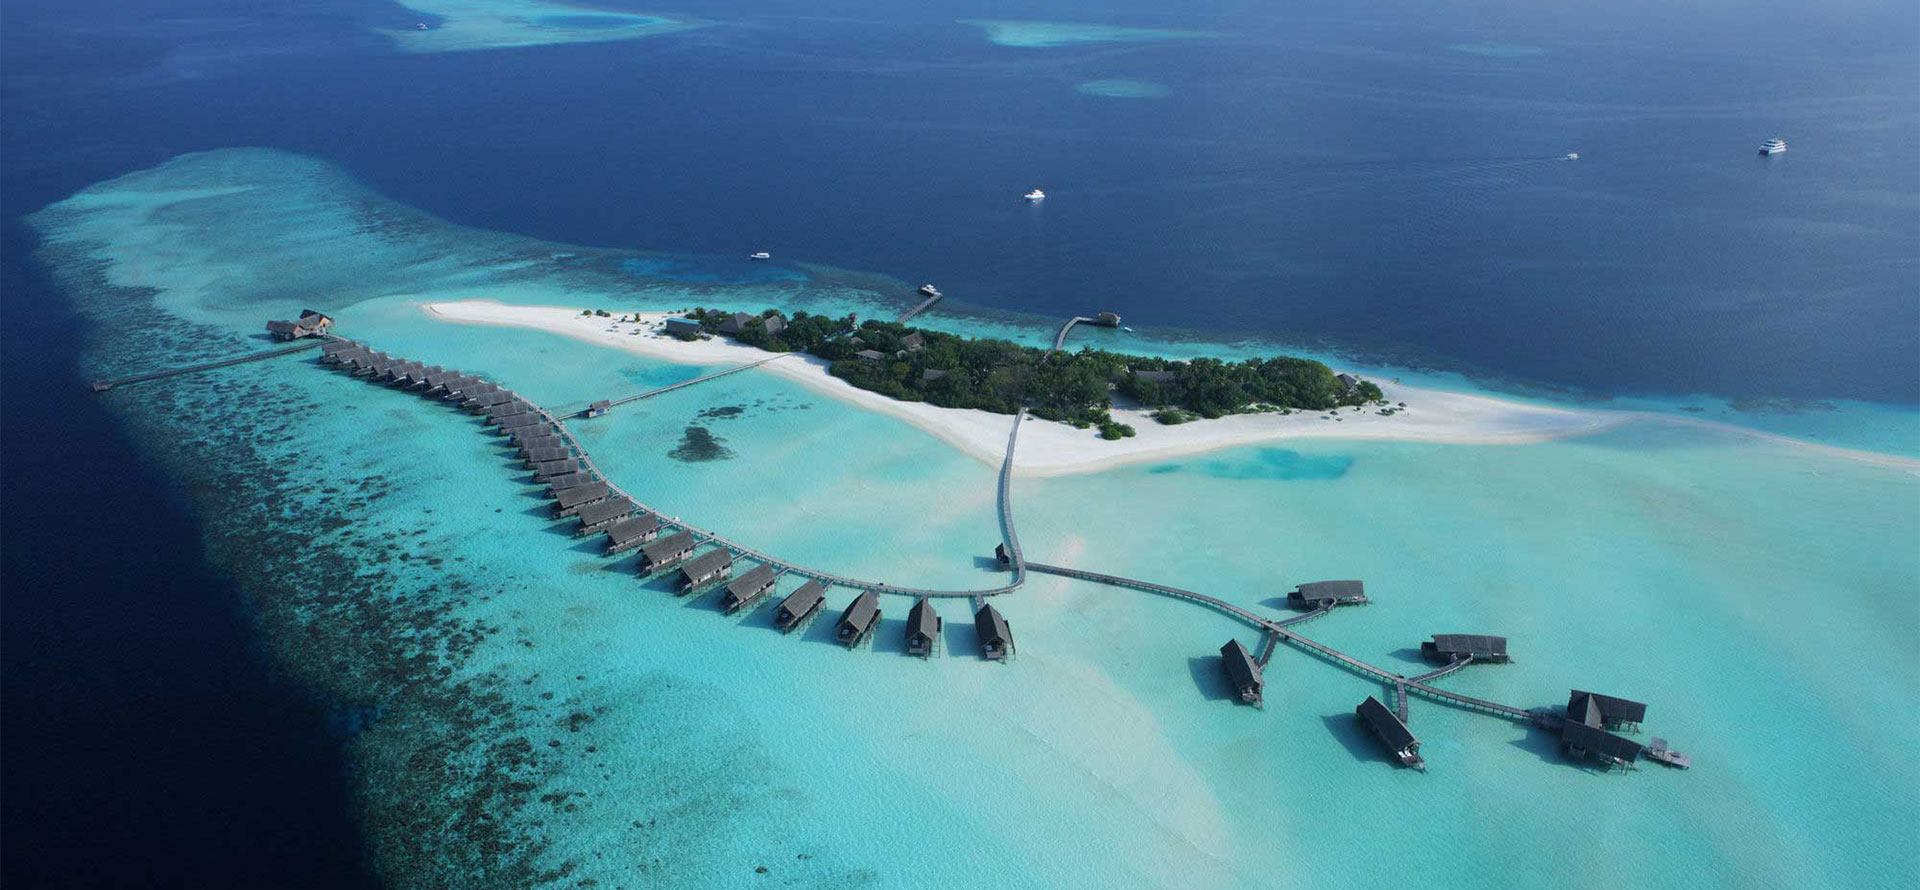 Top view of Tahiti and Maldives.